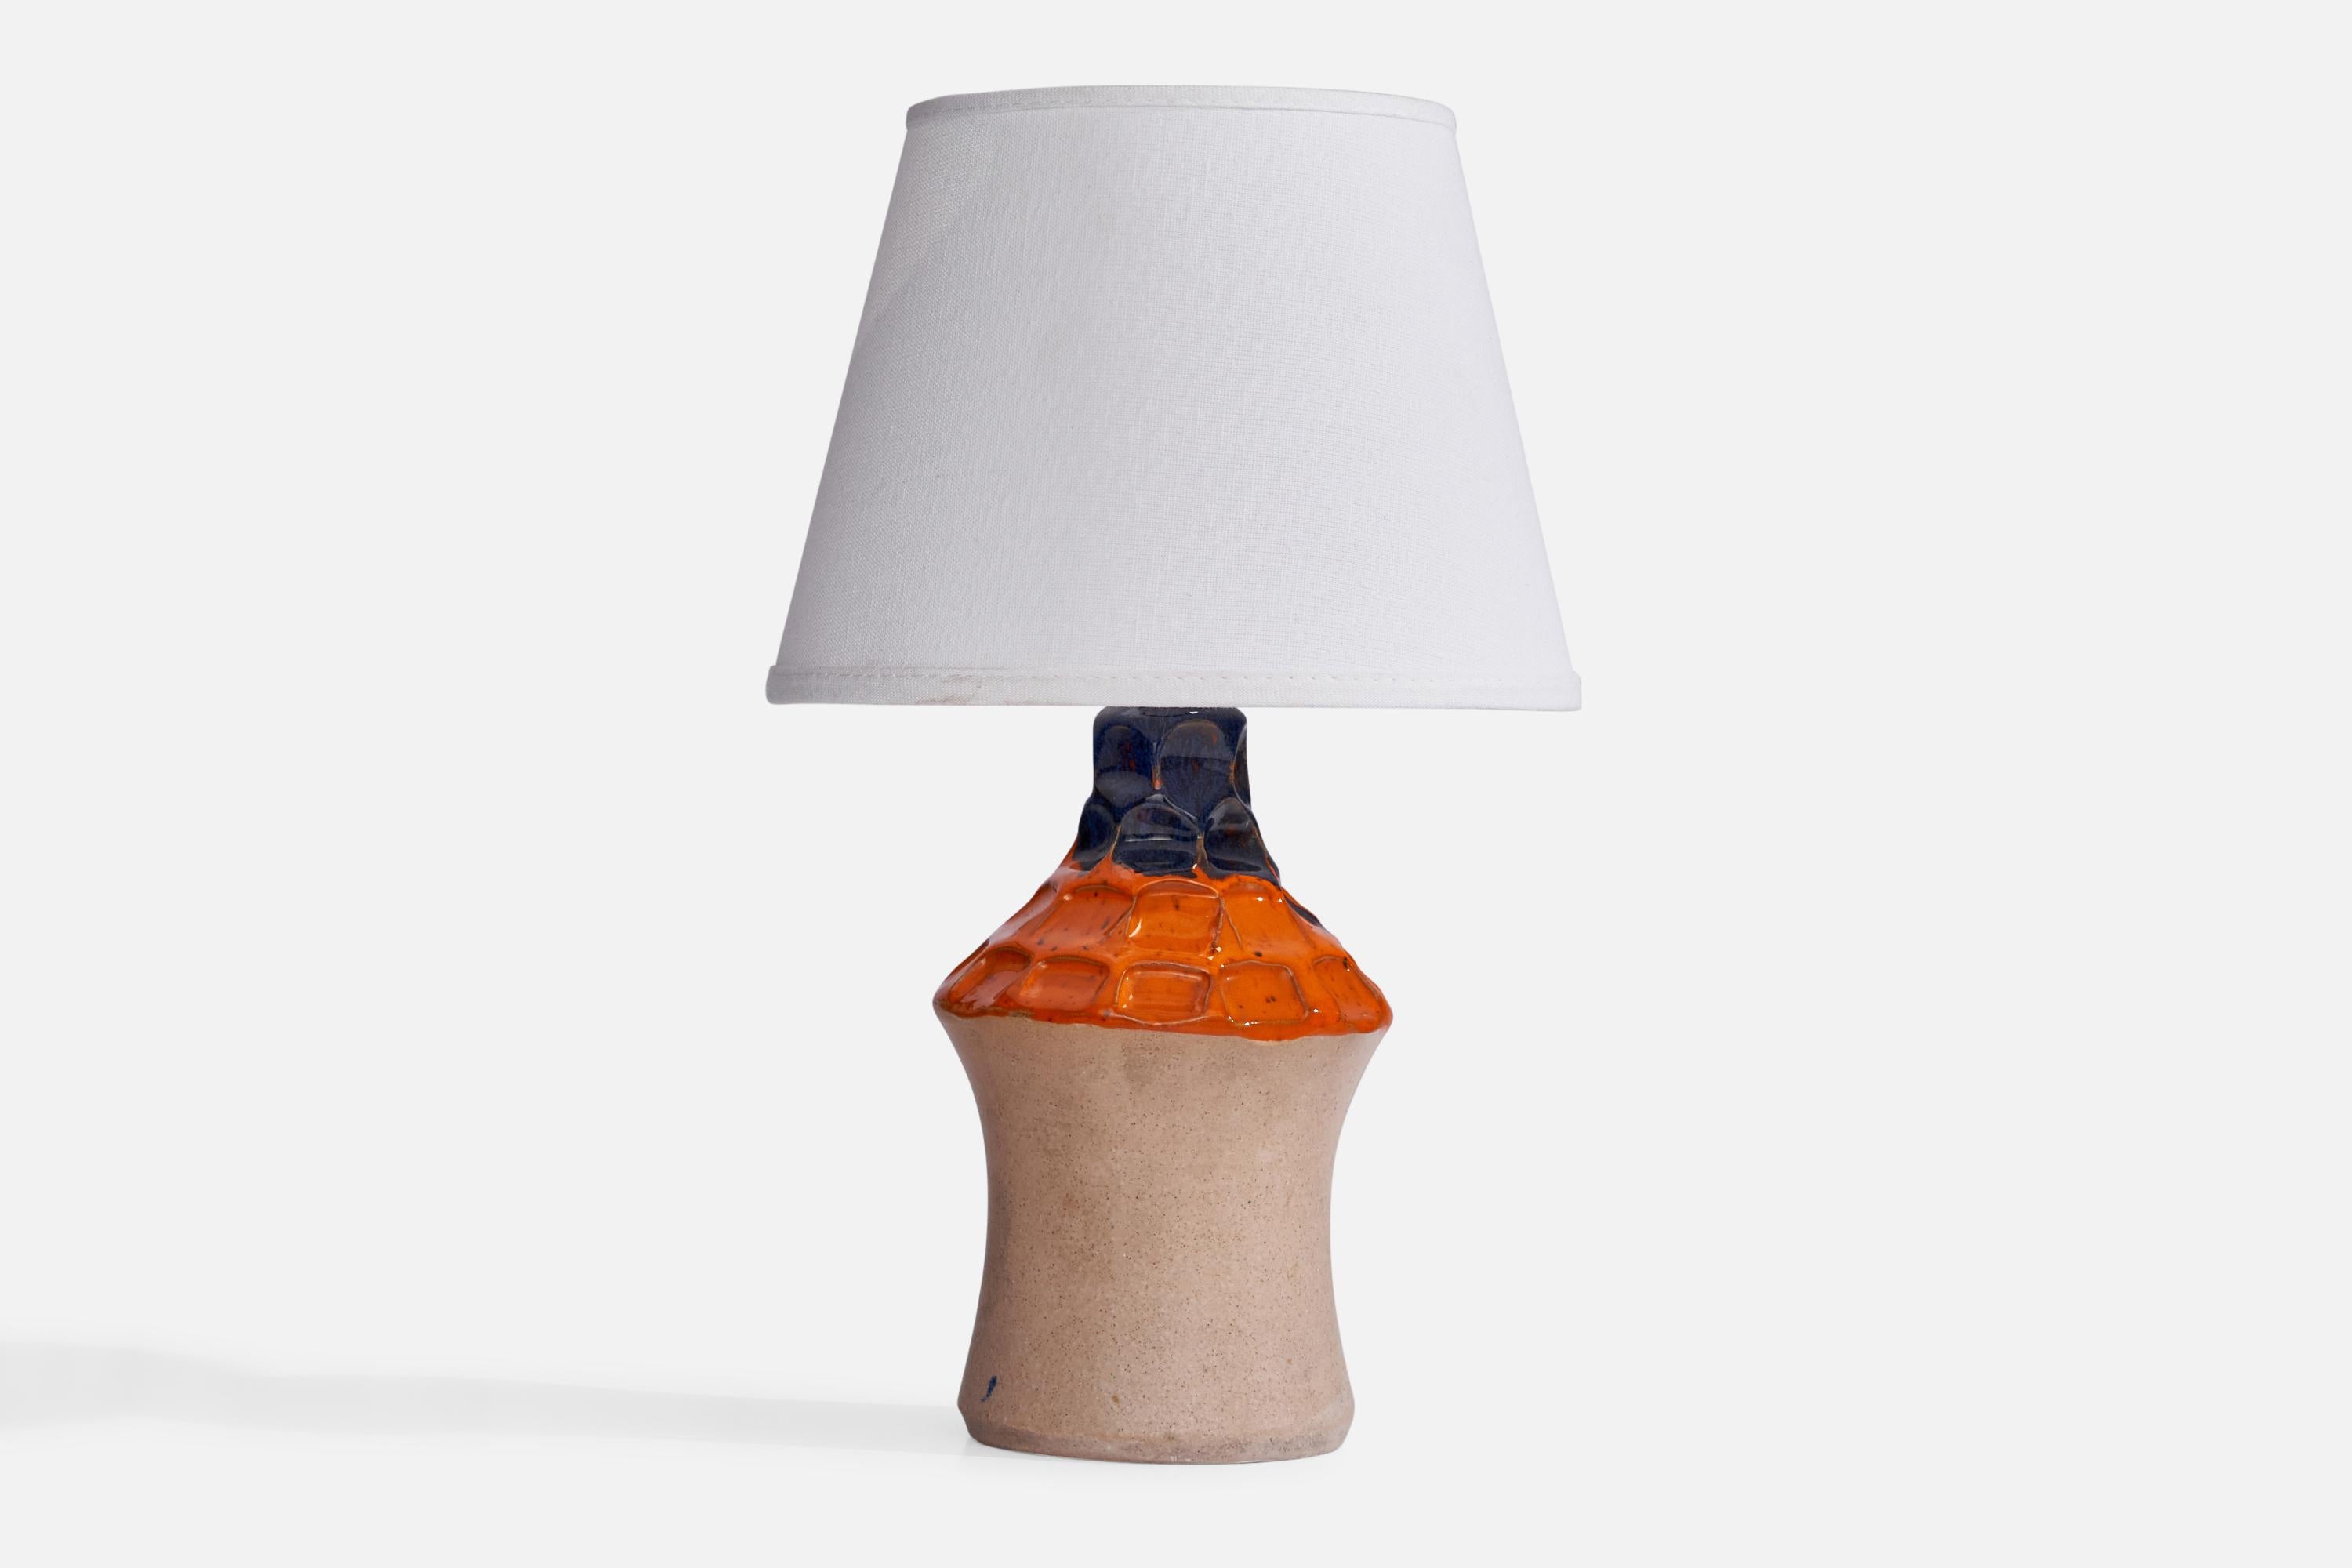 Eine orangefarbene und blaue halb glasierte Keramik-Tischlampe, entworfen und hergestellt in Schweden, 1960er Jahre.

Abmessungen der Lampe (Zoll): 9,65